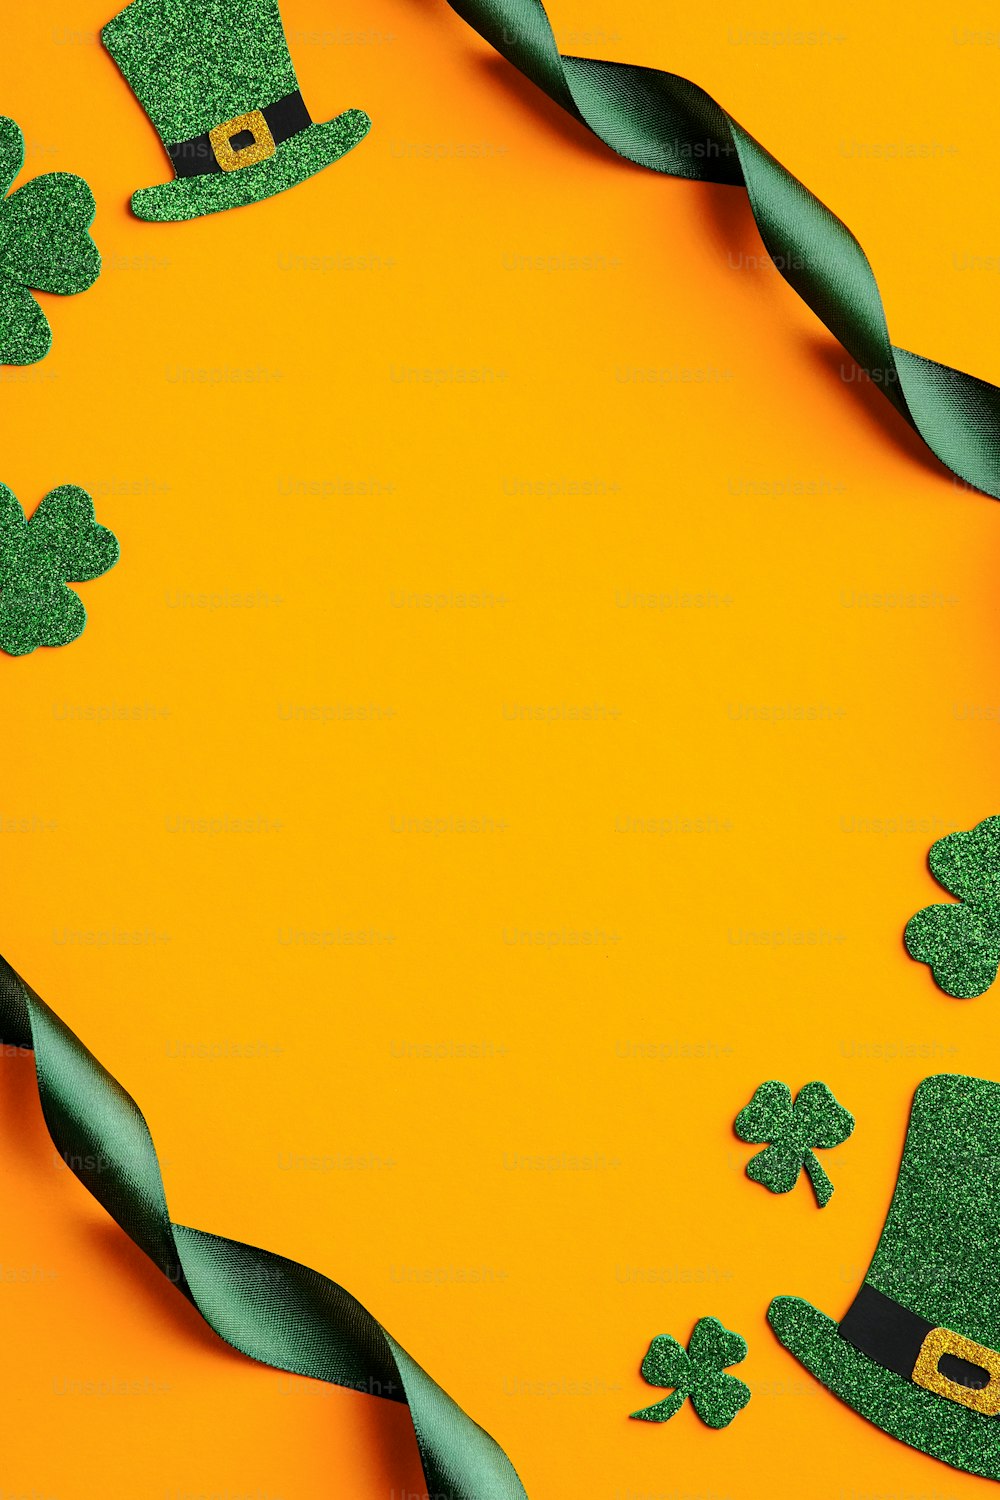 Diseño de pancarta del Día de San Patricio. Marco hecho de cinta verde, sombreros de elfo irlandés, hojas de trébol sobre fondo naranja. Concepto de feliz día de San Patricio